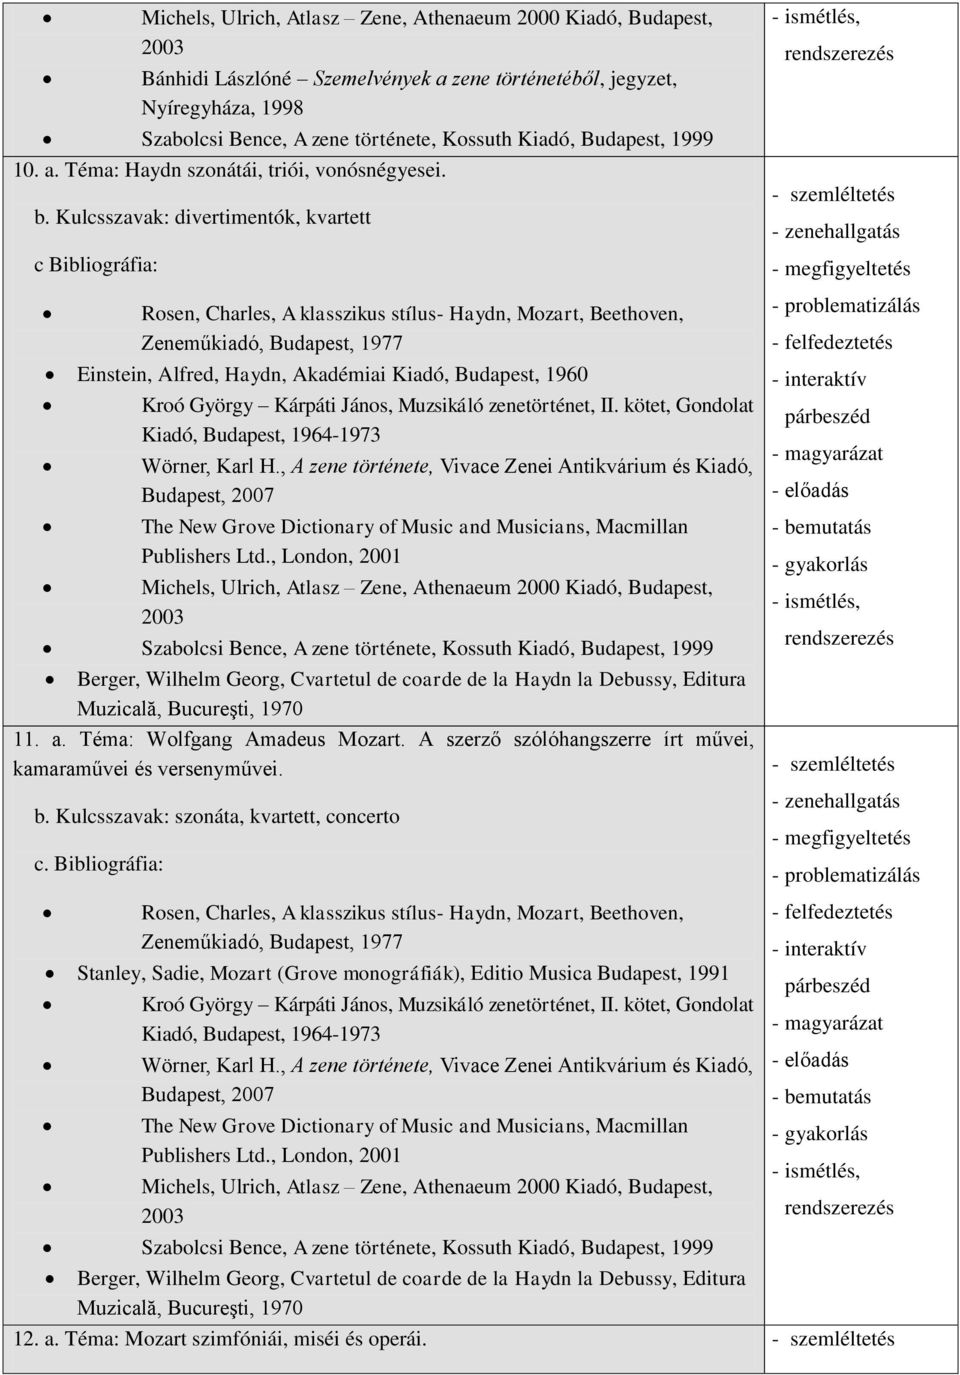 1960 Kroó György Kárpáti János, Muzsikáló zenetörténet, II. kötet, Gondolat Kiadó, Budapest, 1964-1973 The New Grove Dictionary of Music and Musicians, Macmillan Publishers Ltd.